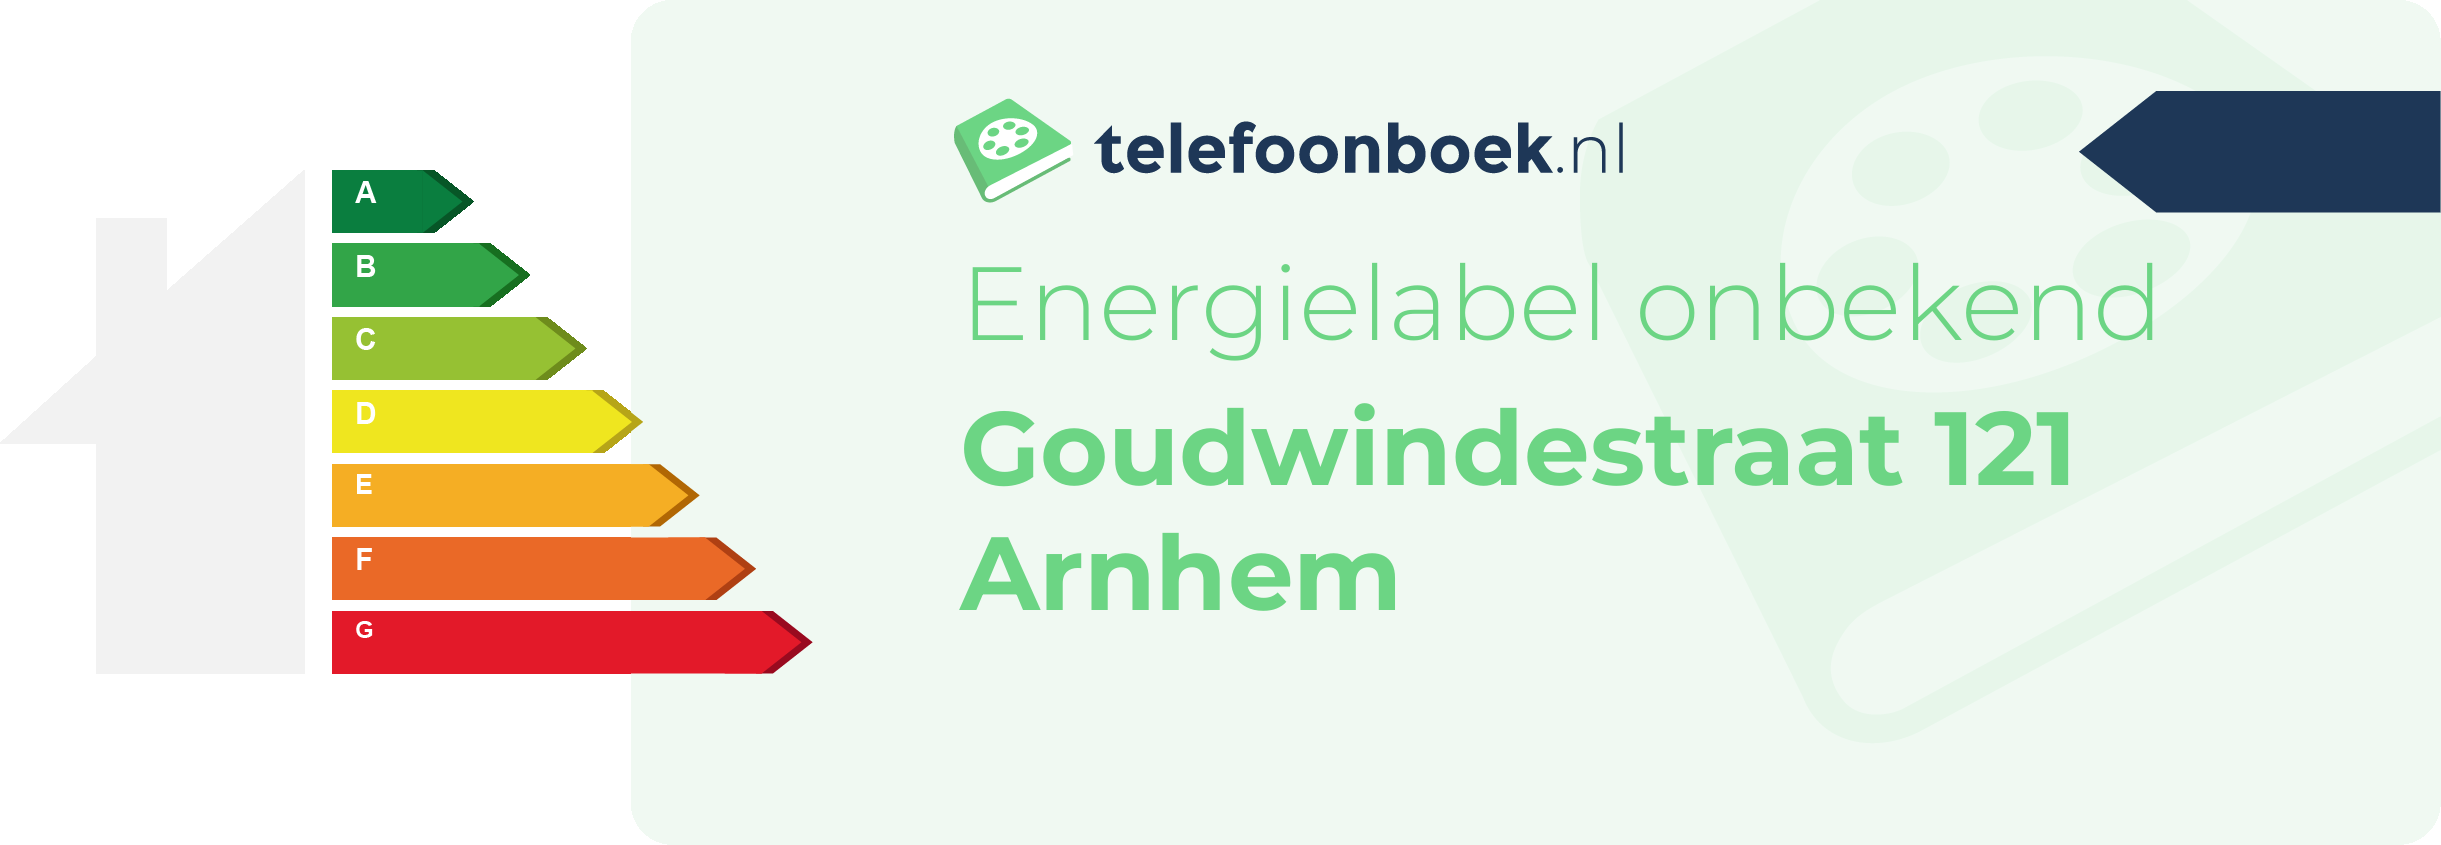 Energielabel Goudwindestraat 121 Arnhem